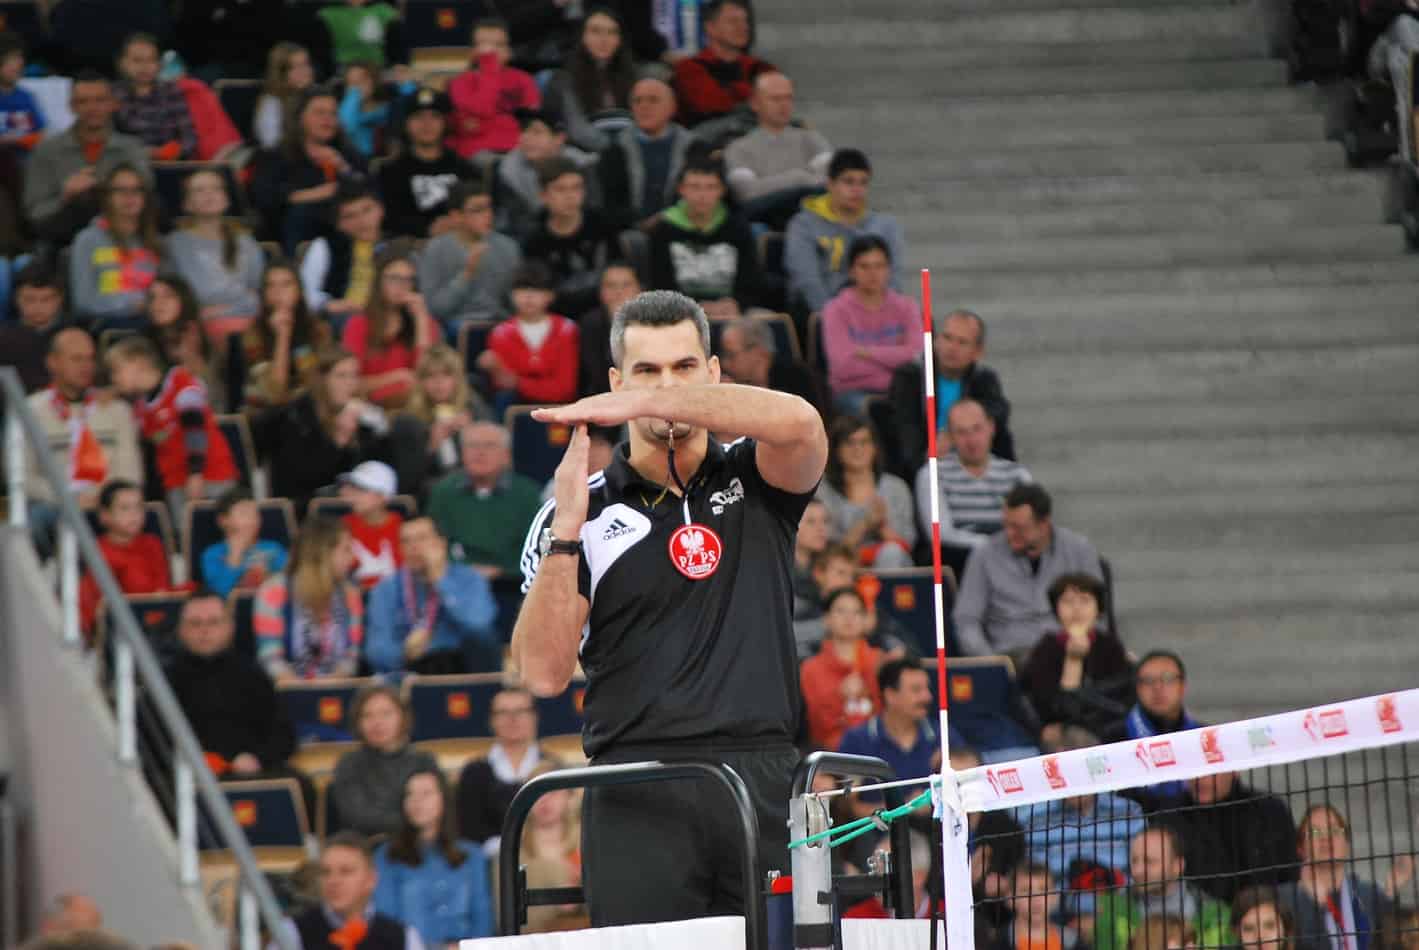 volleyball ref hand signals